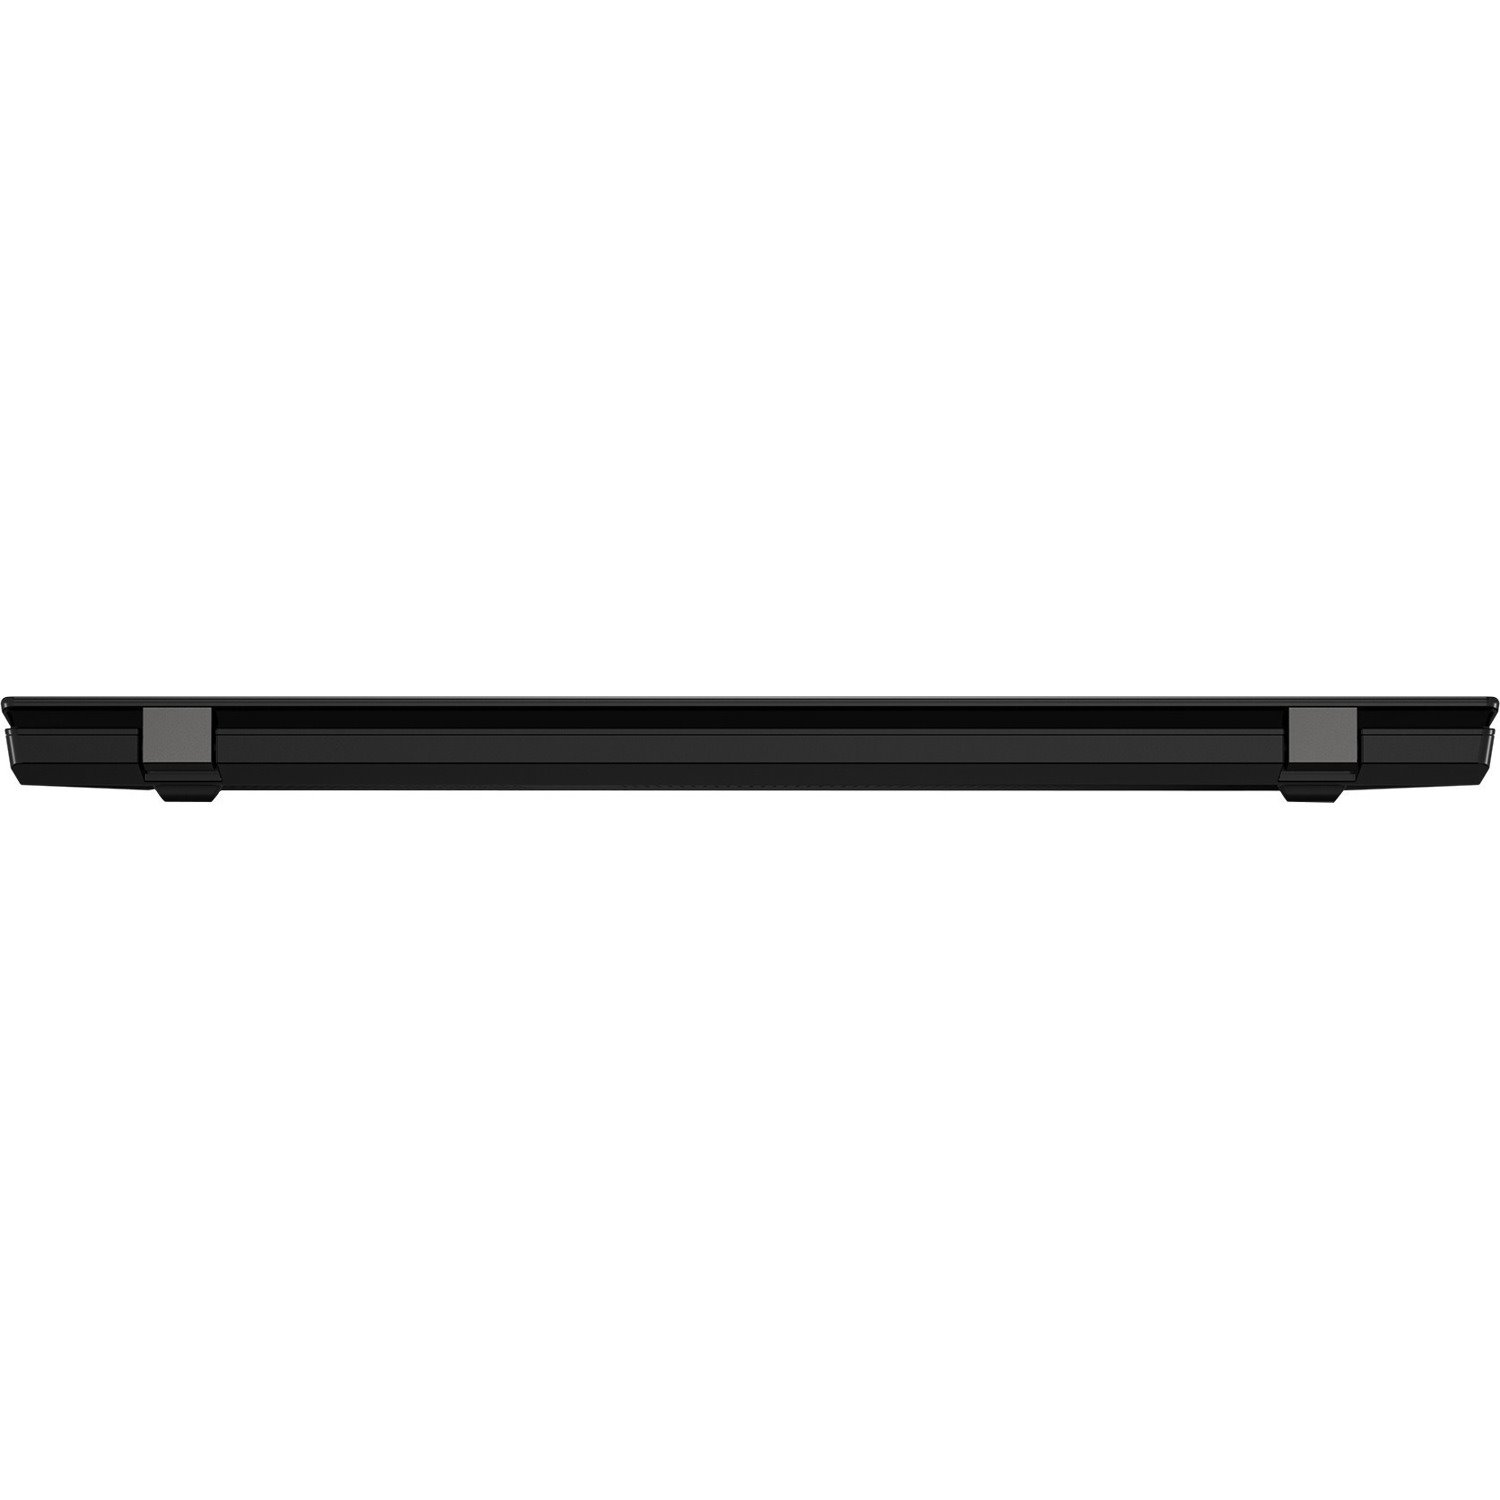 Lenovo ThinkPad L15 Gen2 20X3005UAU 39.6 cm (15.6") Notebook - Full HD - 1920 x 1080 - Intel Core i5 11th Gen i5-1135G7 Quad-core (4 Core) 2.40 GHz - 8 GB RAM - 256 GB SSD - Black